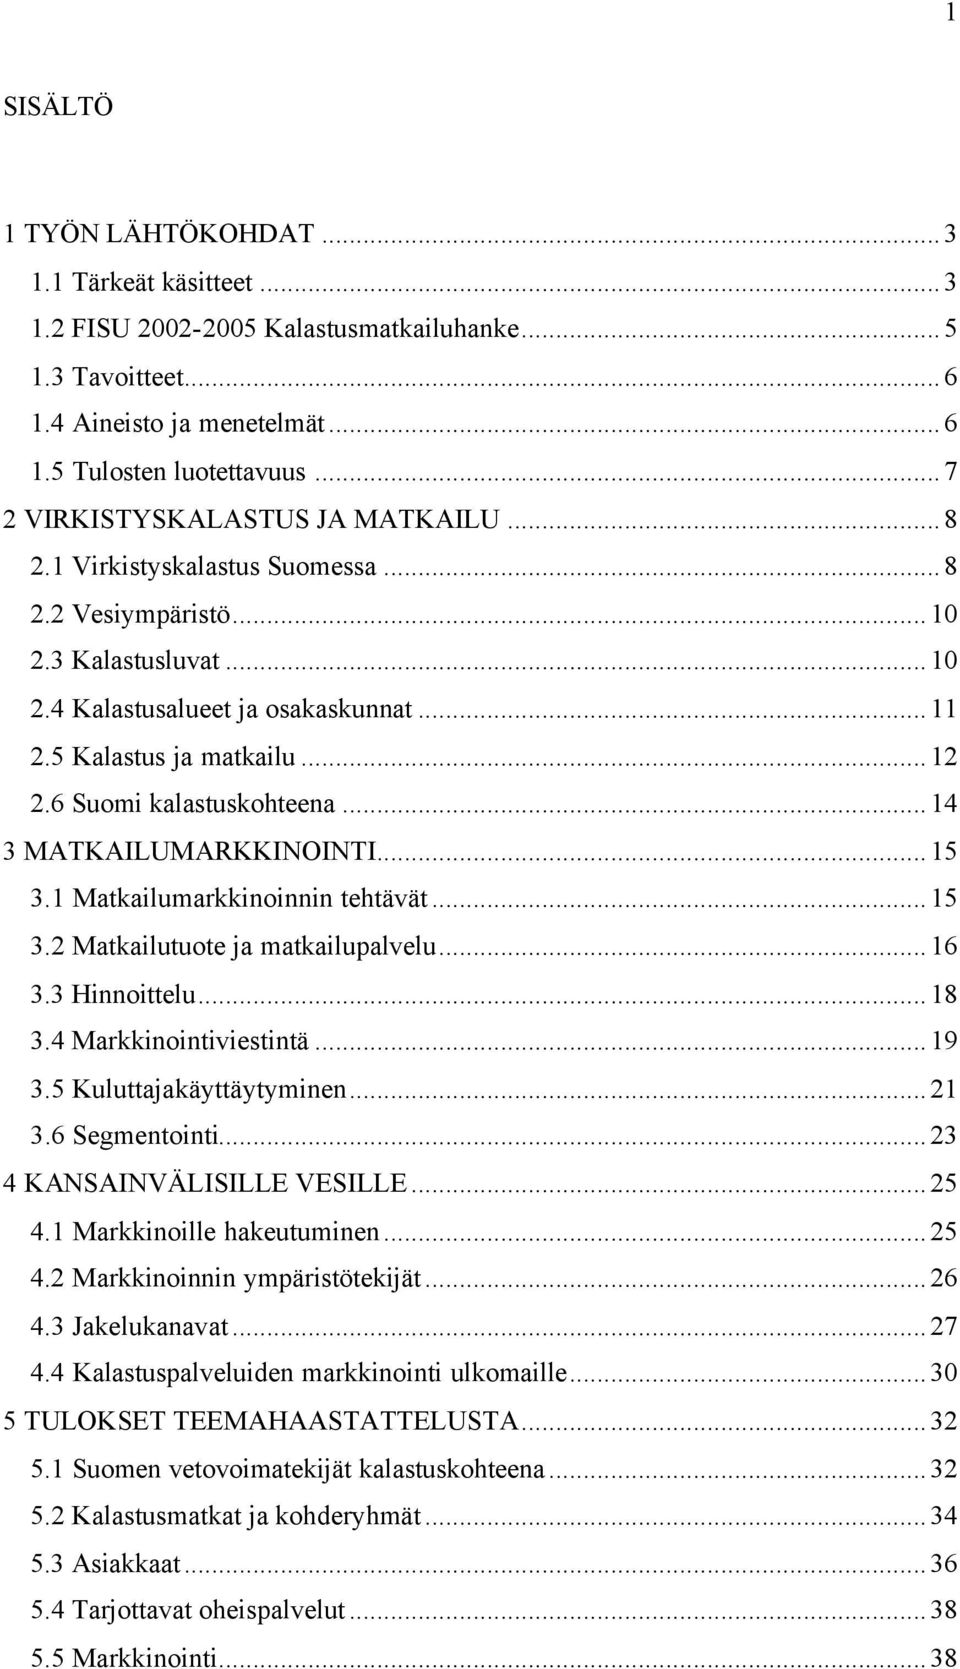 6 Suomi kalastuskohteena...14 3 MATKAILUMARKKINOINTI...15 3.1 Matkailumarkkinoinnin tehtävät...15 3.2 Matkailutuote ja matkailupalvelu...16 3.3 Hinnoittelu...18 3.4 Markkinointiviestintä...19 3.